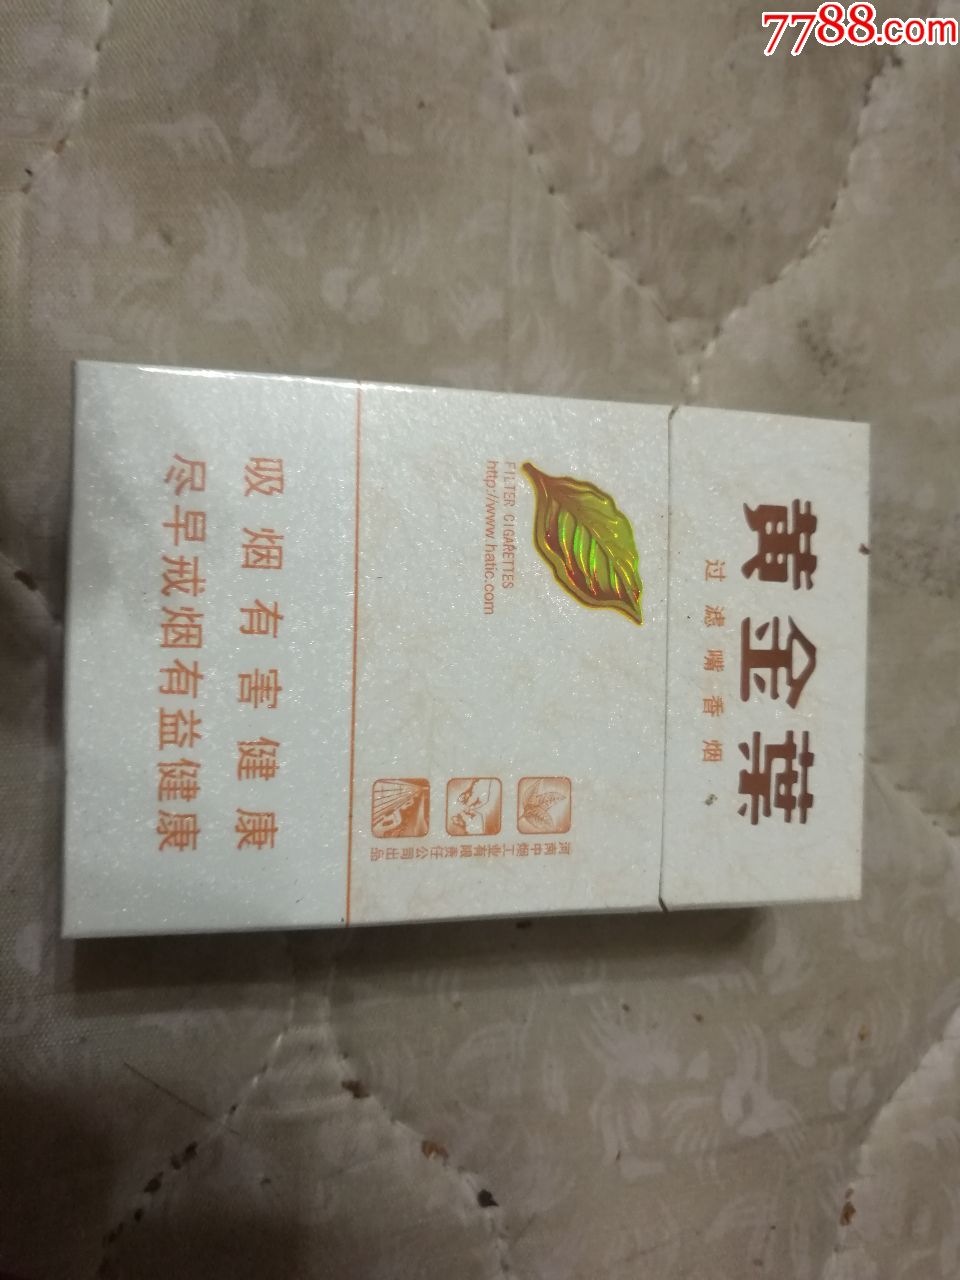 黄金叶小天叶烟盒1个-价格:2元-se59889774-烟标/烟盒-零售-7788收藏